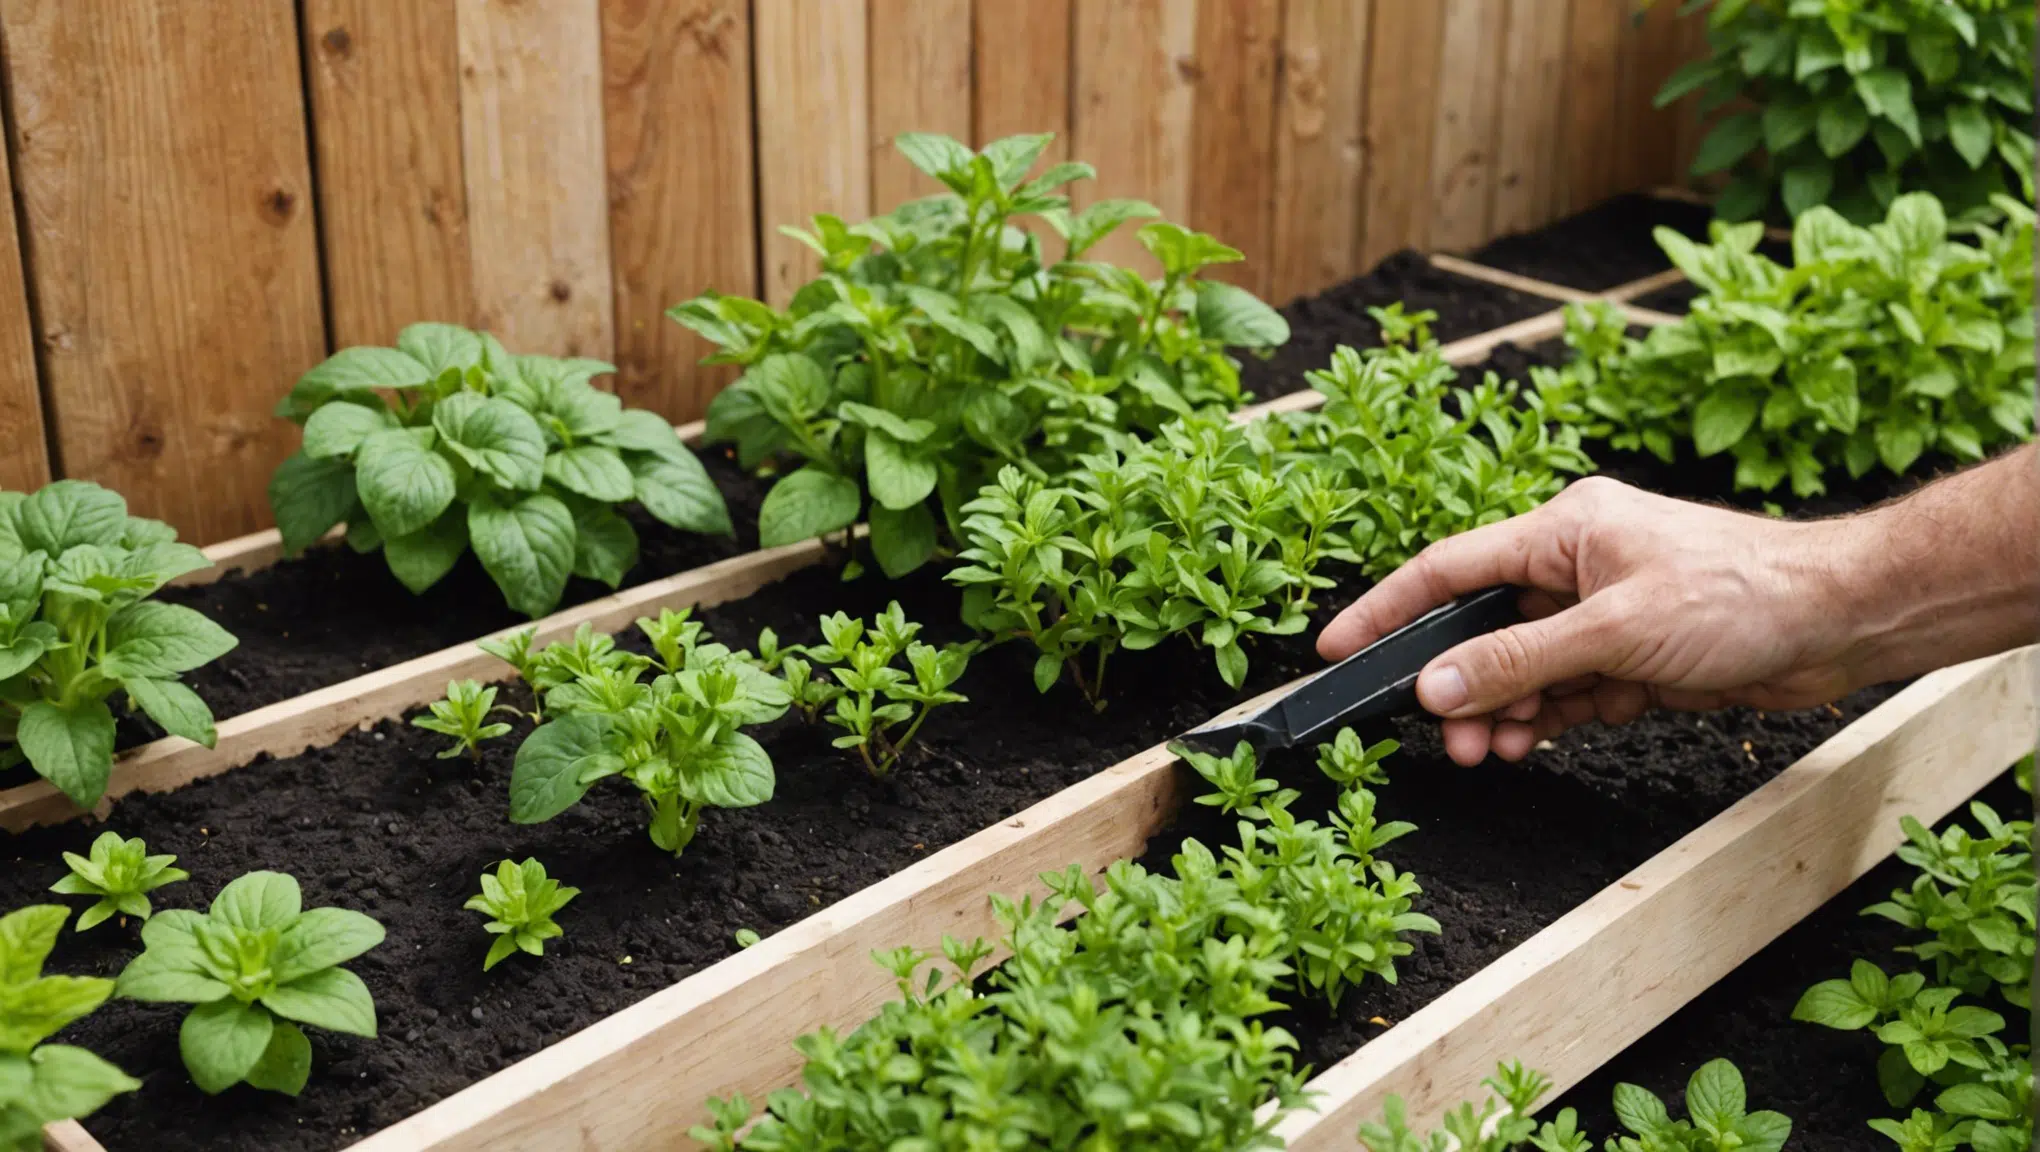 découvrez les incroyables bienfaits de ces astuces d'horticulture sur votre jardin ! vous serez surpris par les résultats !